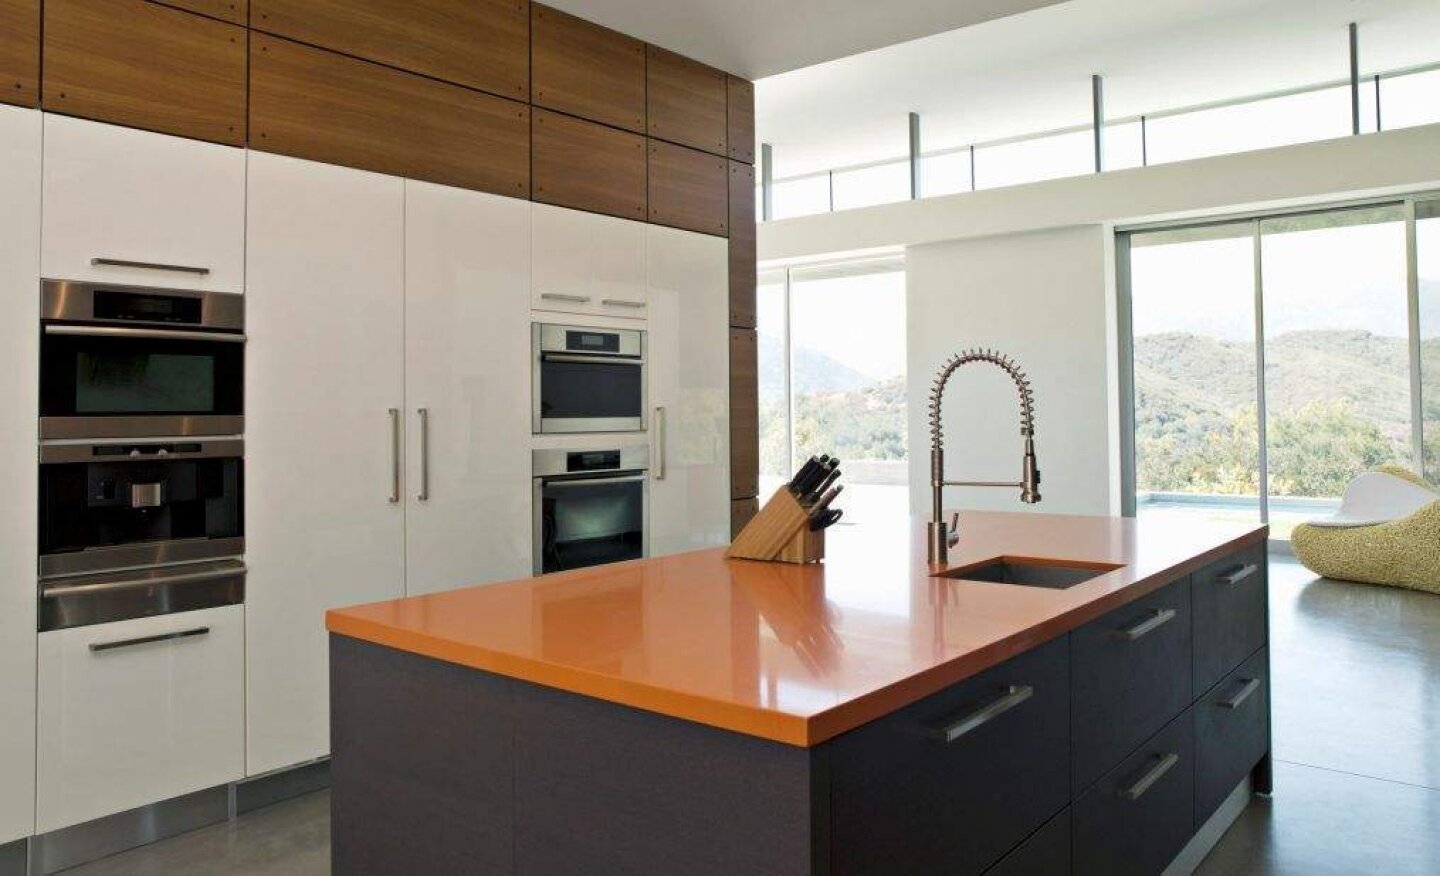 48636-modern-kitchen-home-interior-design-ideas9_1440x900